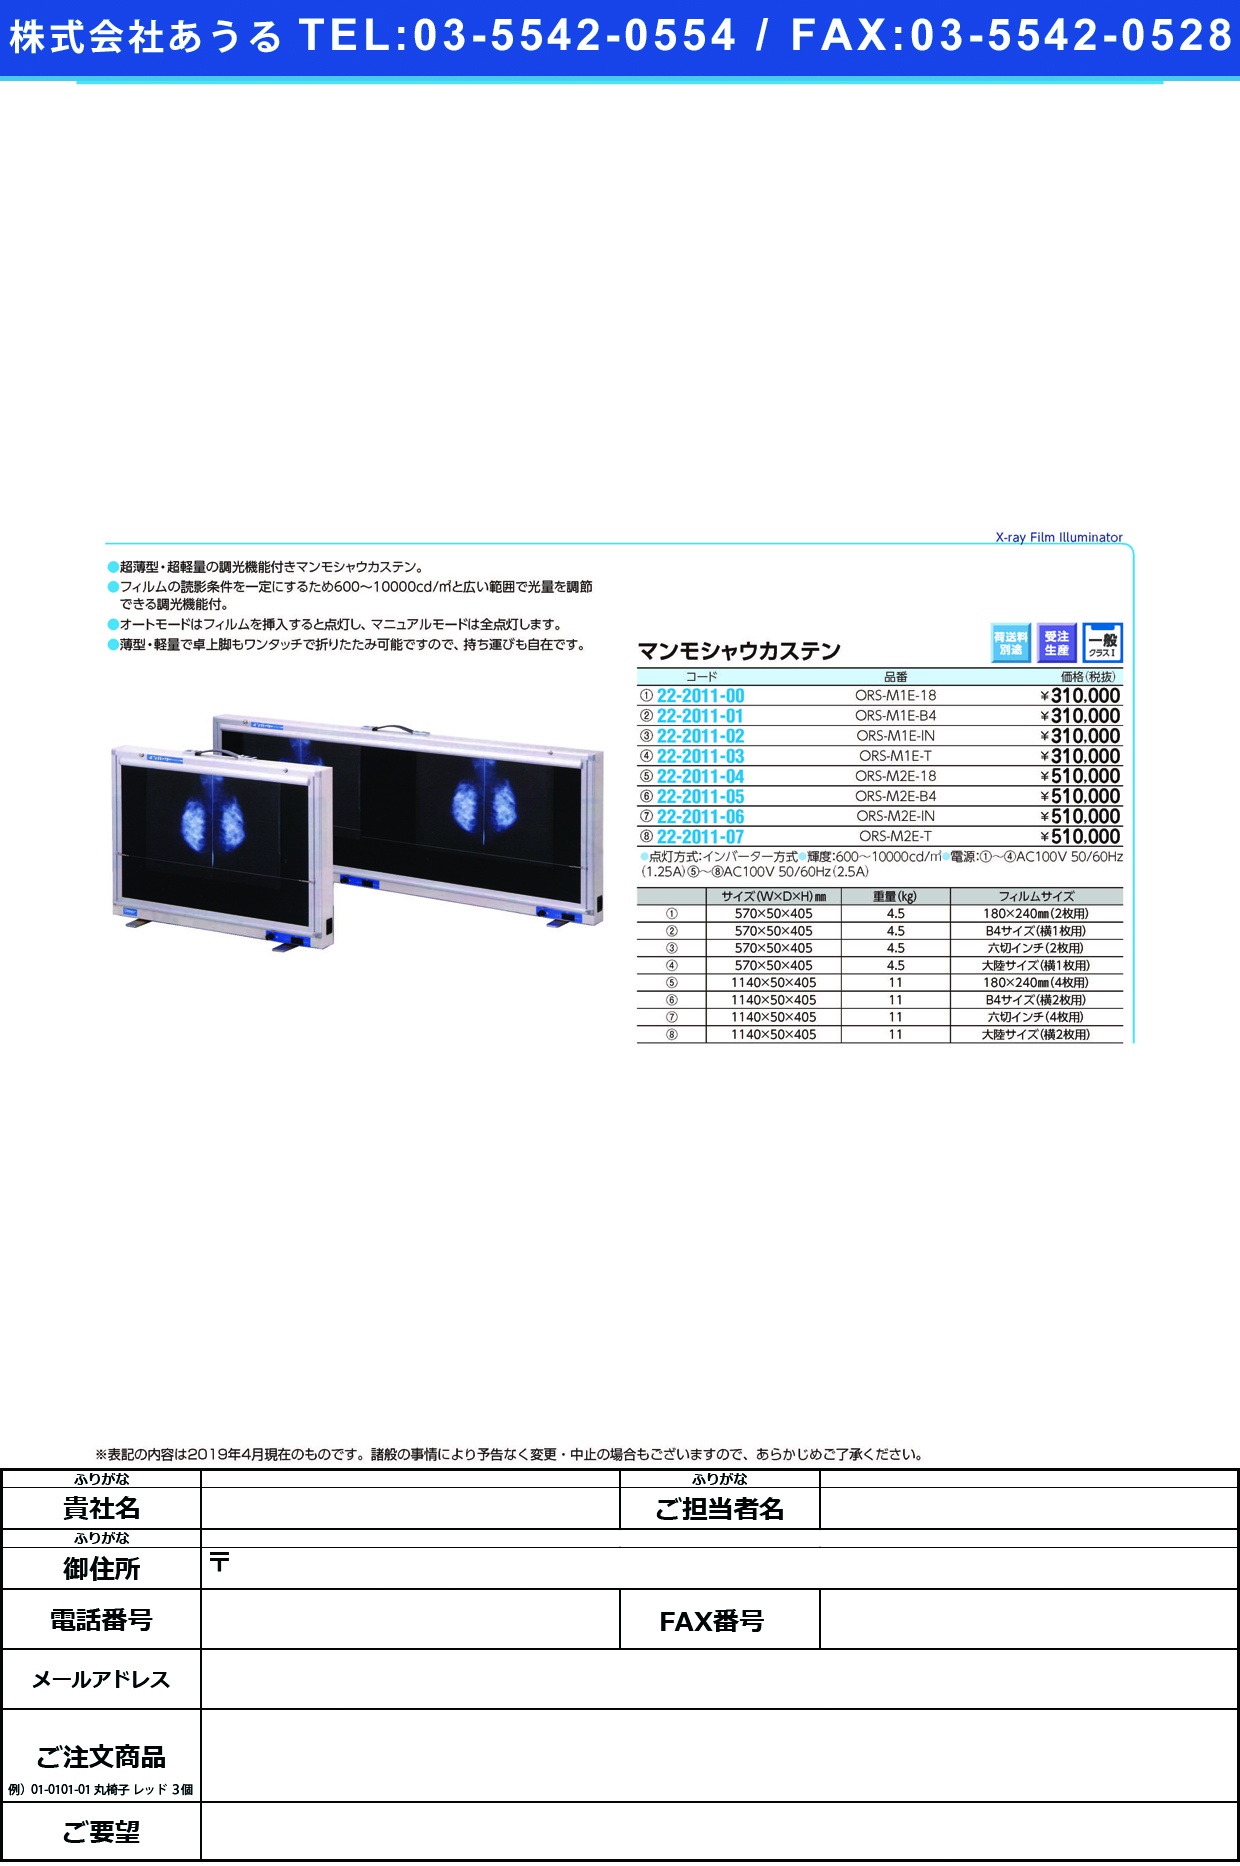 (22-2011-04)マンモシャウカステン（薄型） ORS-M2E-18 ﾏﾝﾓｼｬｳｶｽﾃﾝ(ｳｽｶﾞﾀ)【1台単位】【2019年カタログ商品】